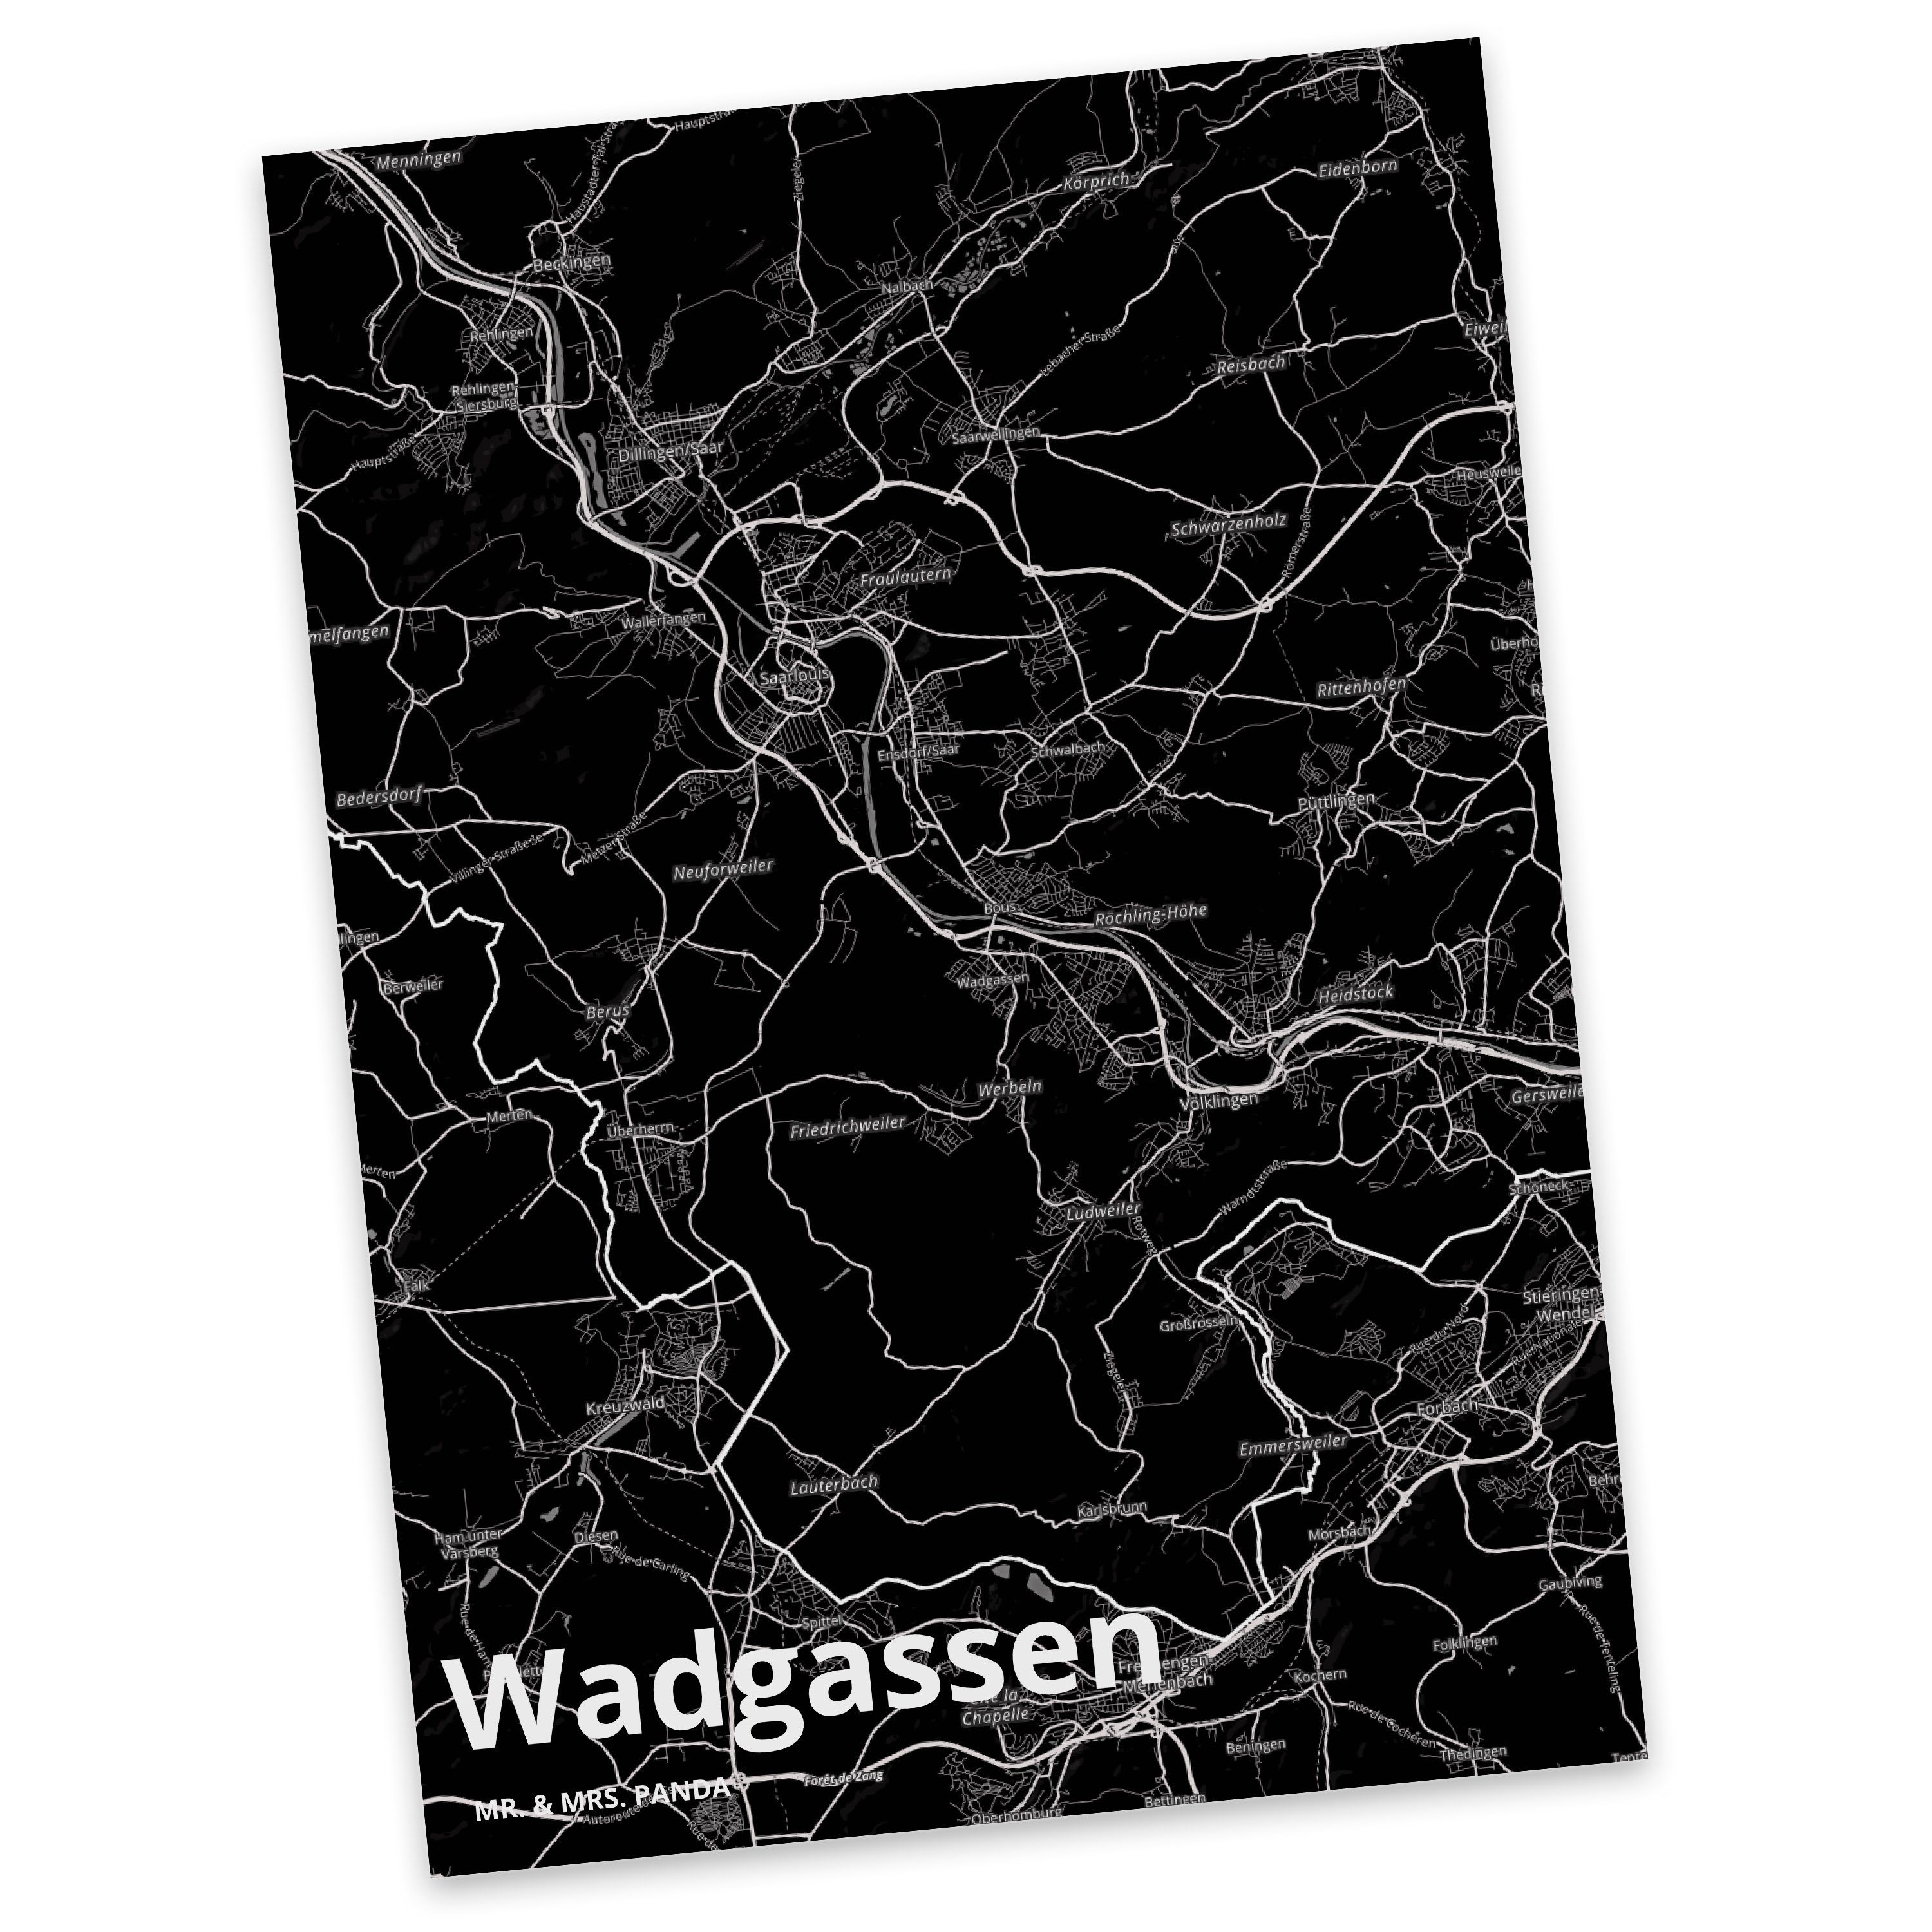 Mr. & Mrs. Panda Postkarte Wadgassen - Geschenk, Stadt Dorf Karte Landkarte Map Stadtplan, Gesch